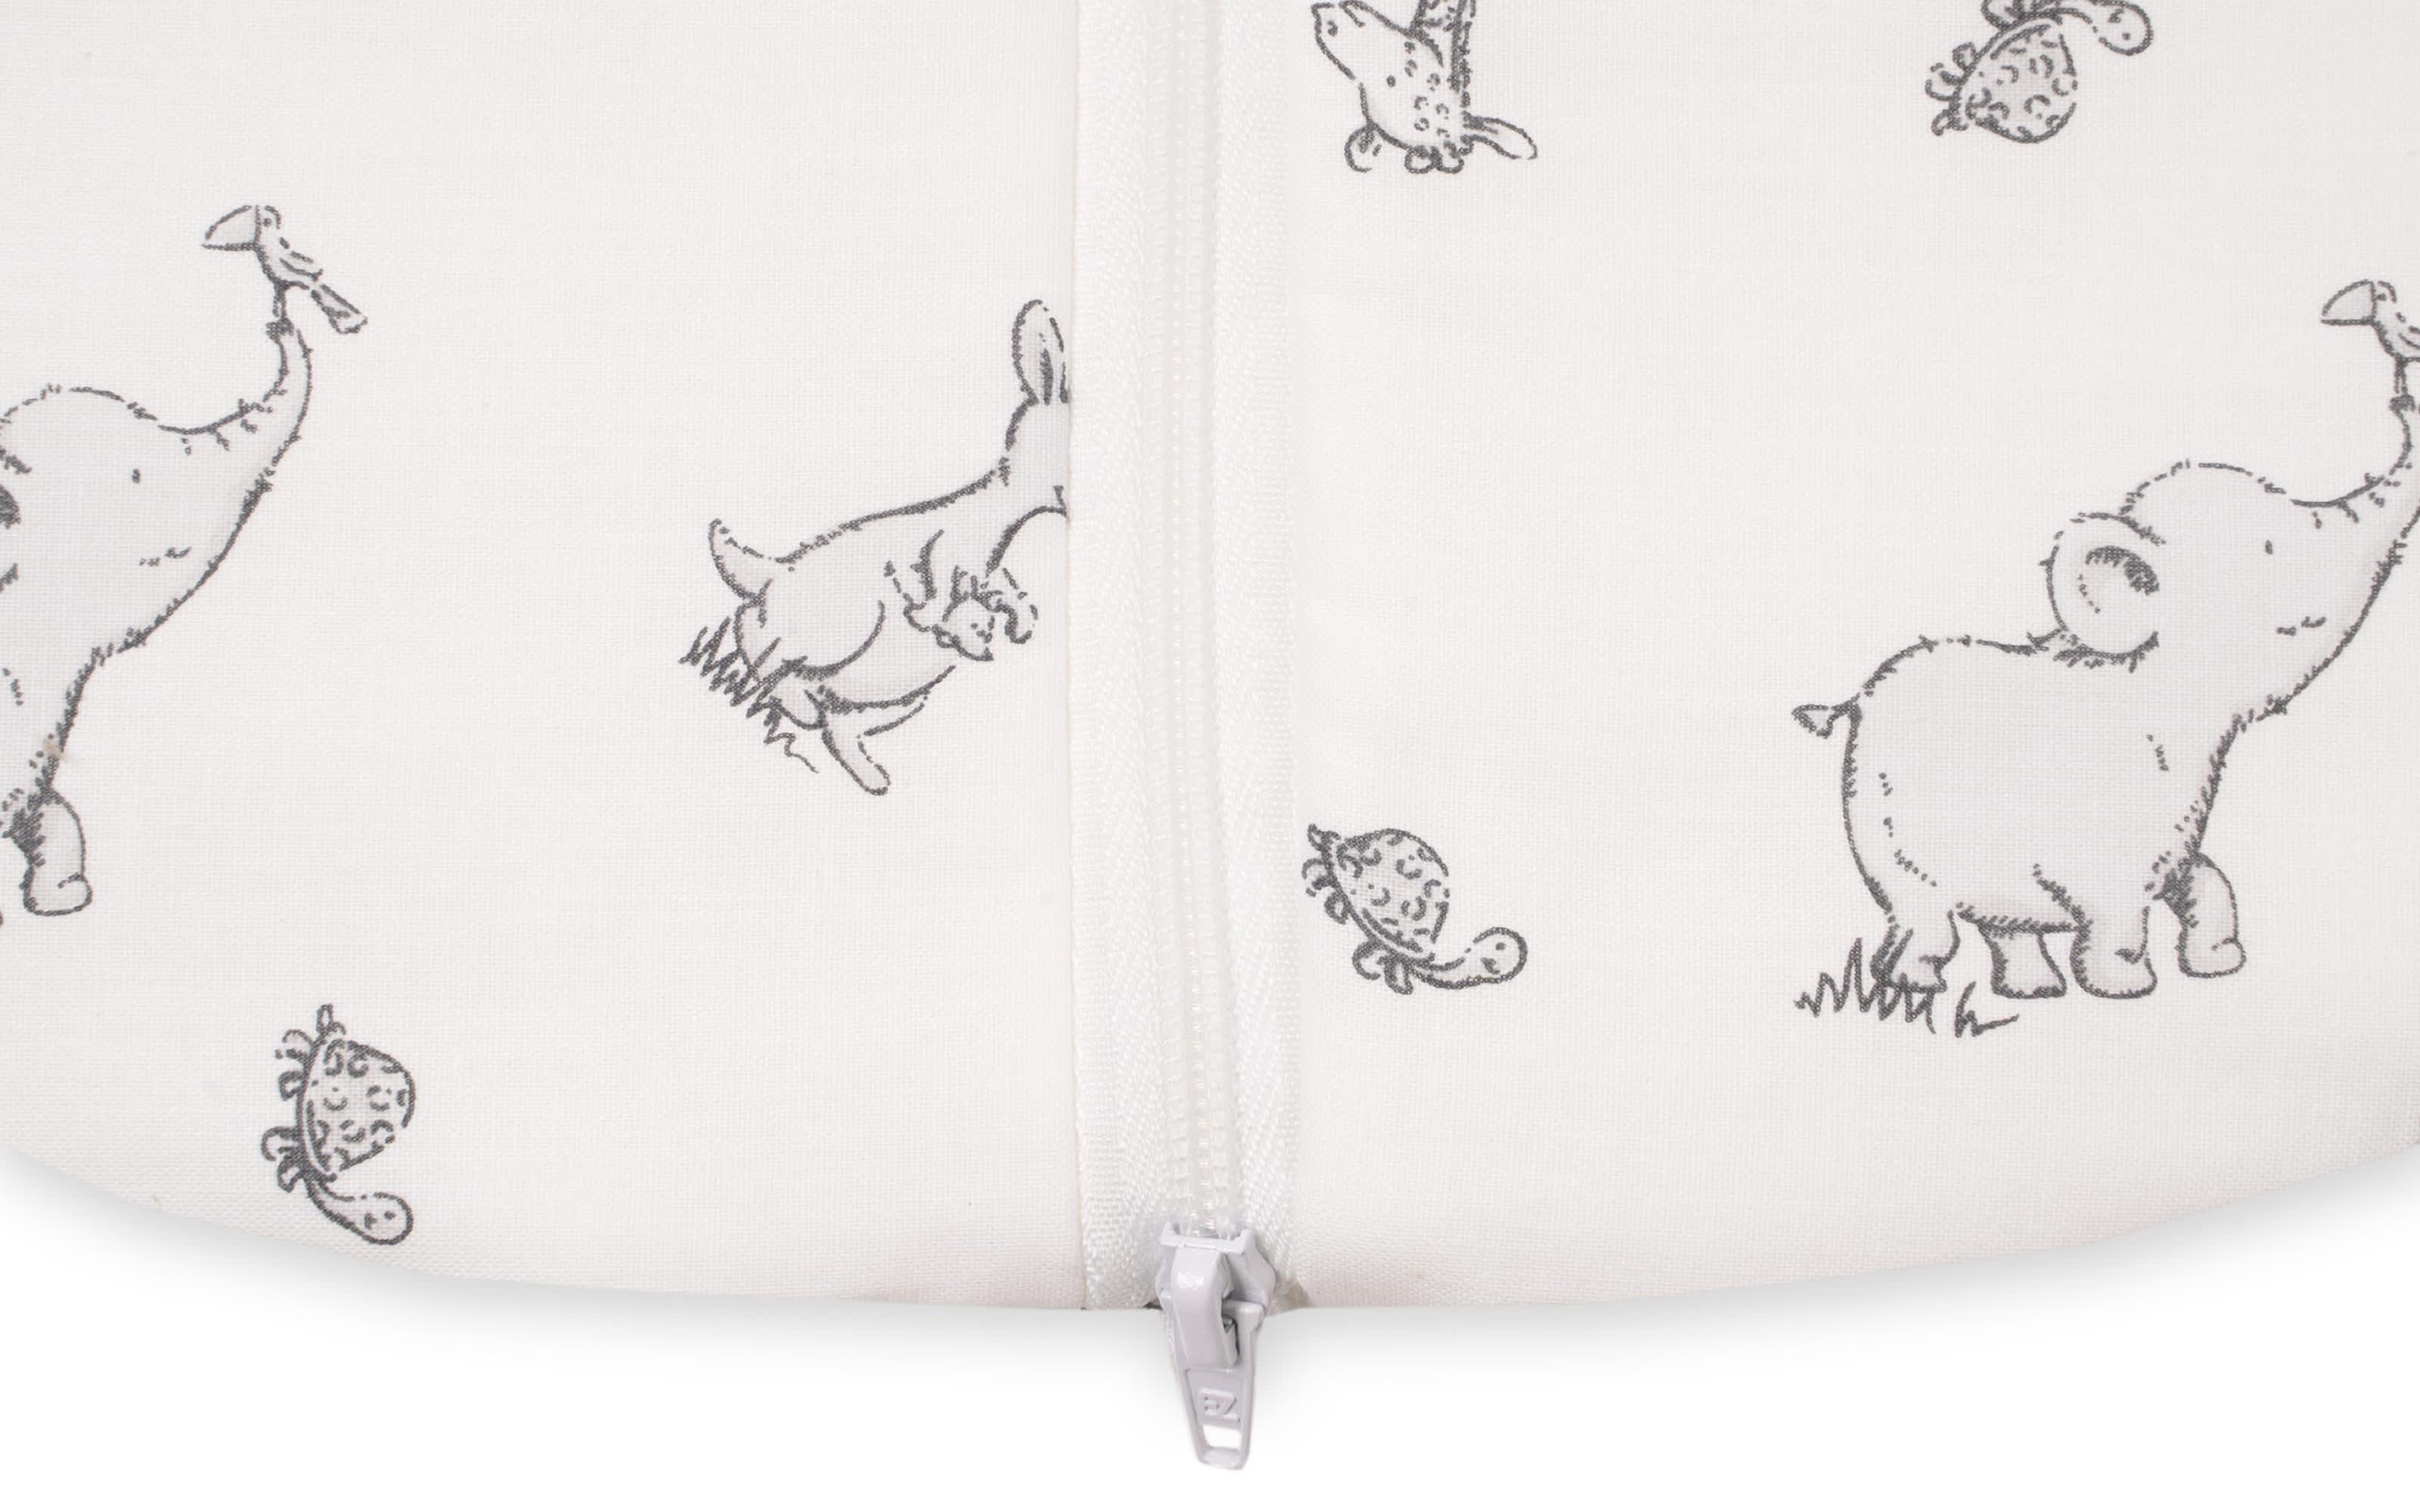 Sommer-Schlafsack, weiß mit Muster Safari, 90 cm